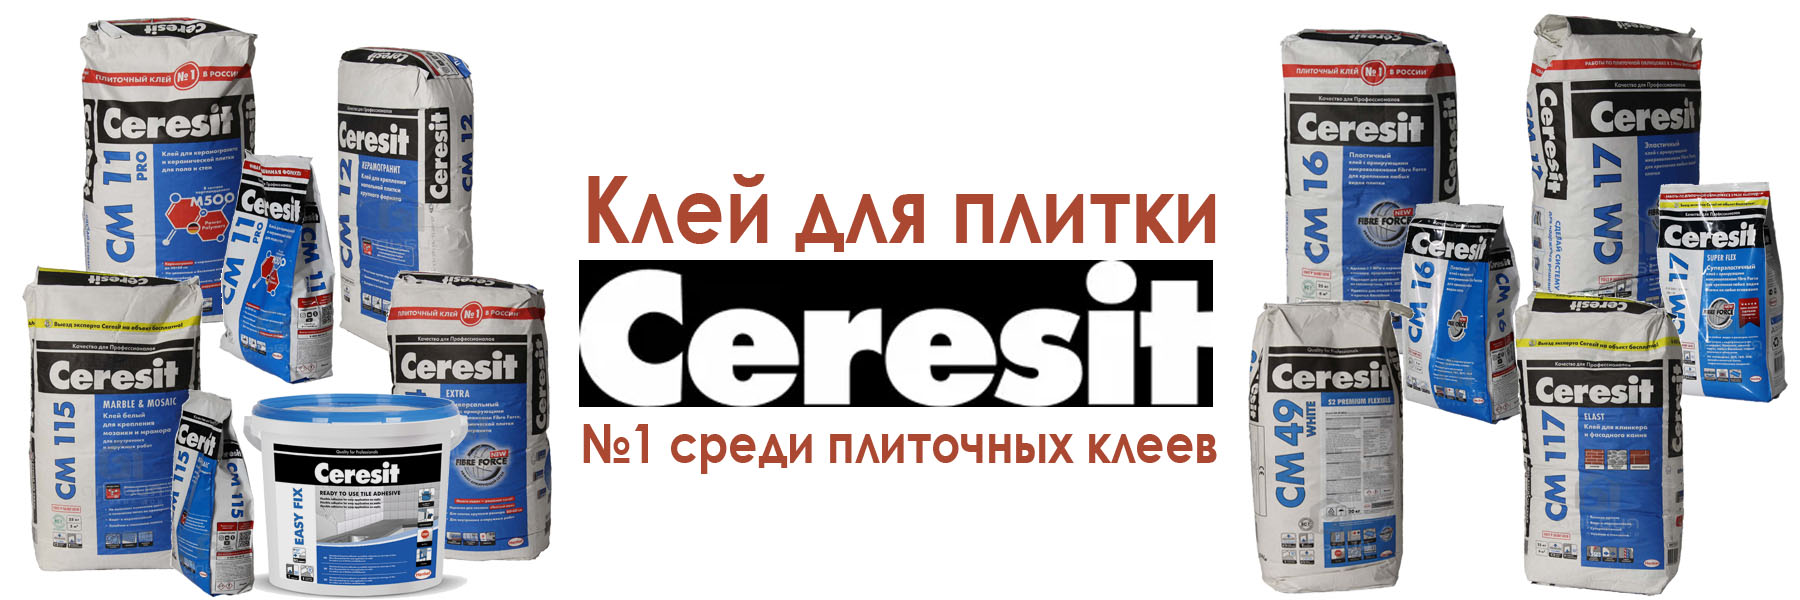 клей для плитки ceresit купить в Москве